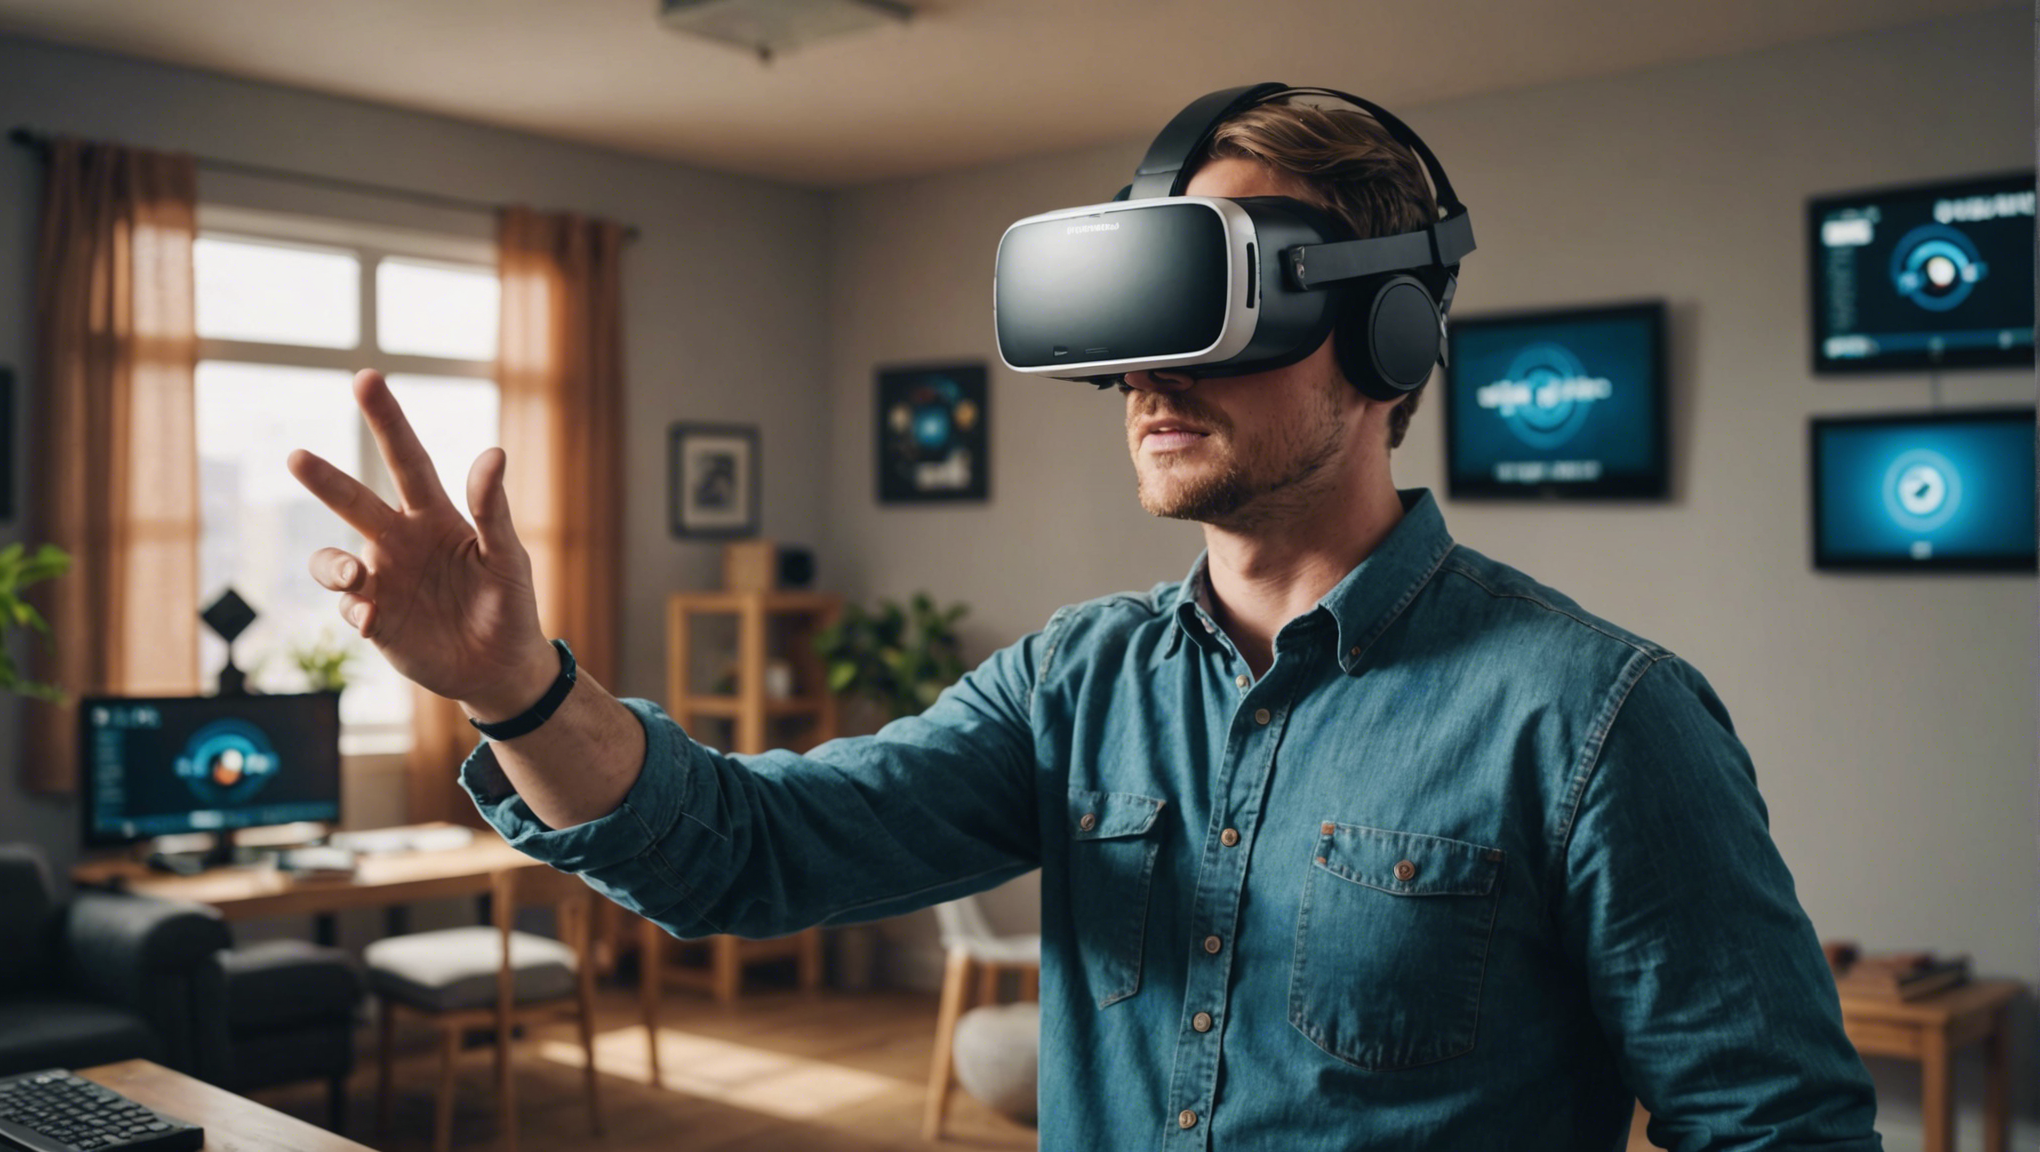 découvrez comment fonctionne la simulation de réalité virtuelle et plongez dans un monde virtuel fascinant grâce à cette technologie innovante.